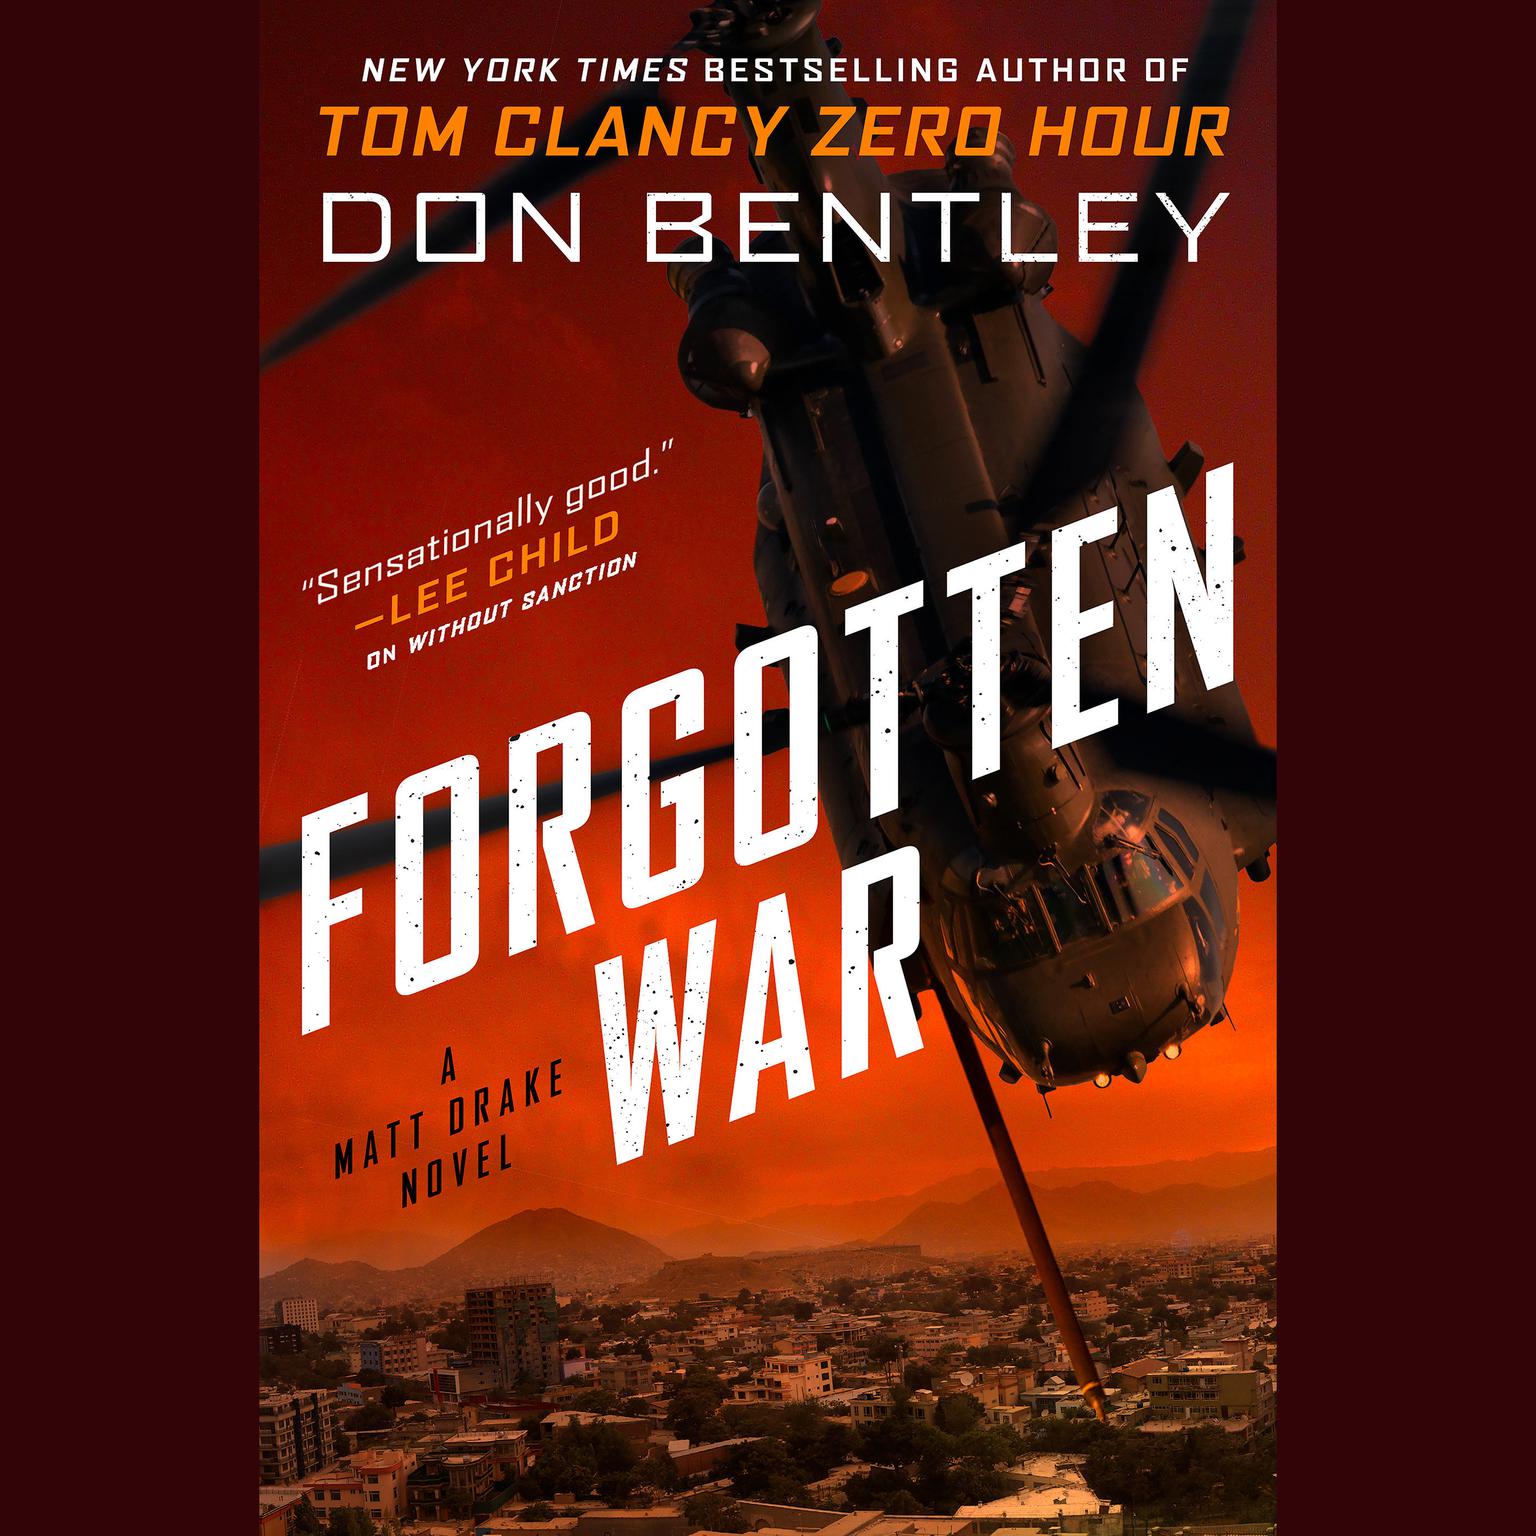 Forgotten War Audiobook, by Don Bentley